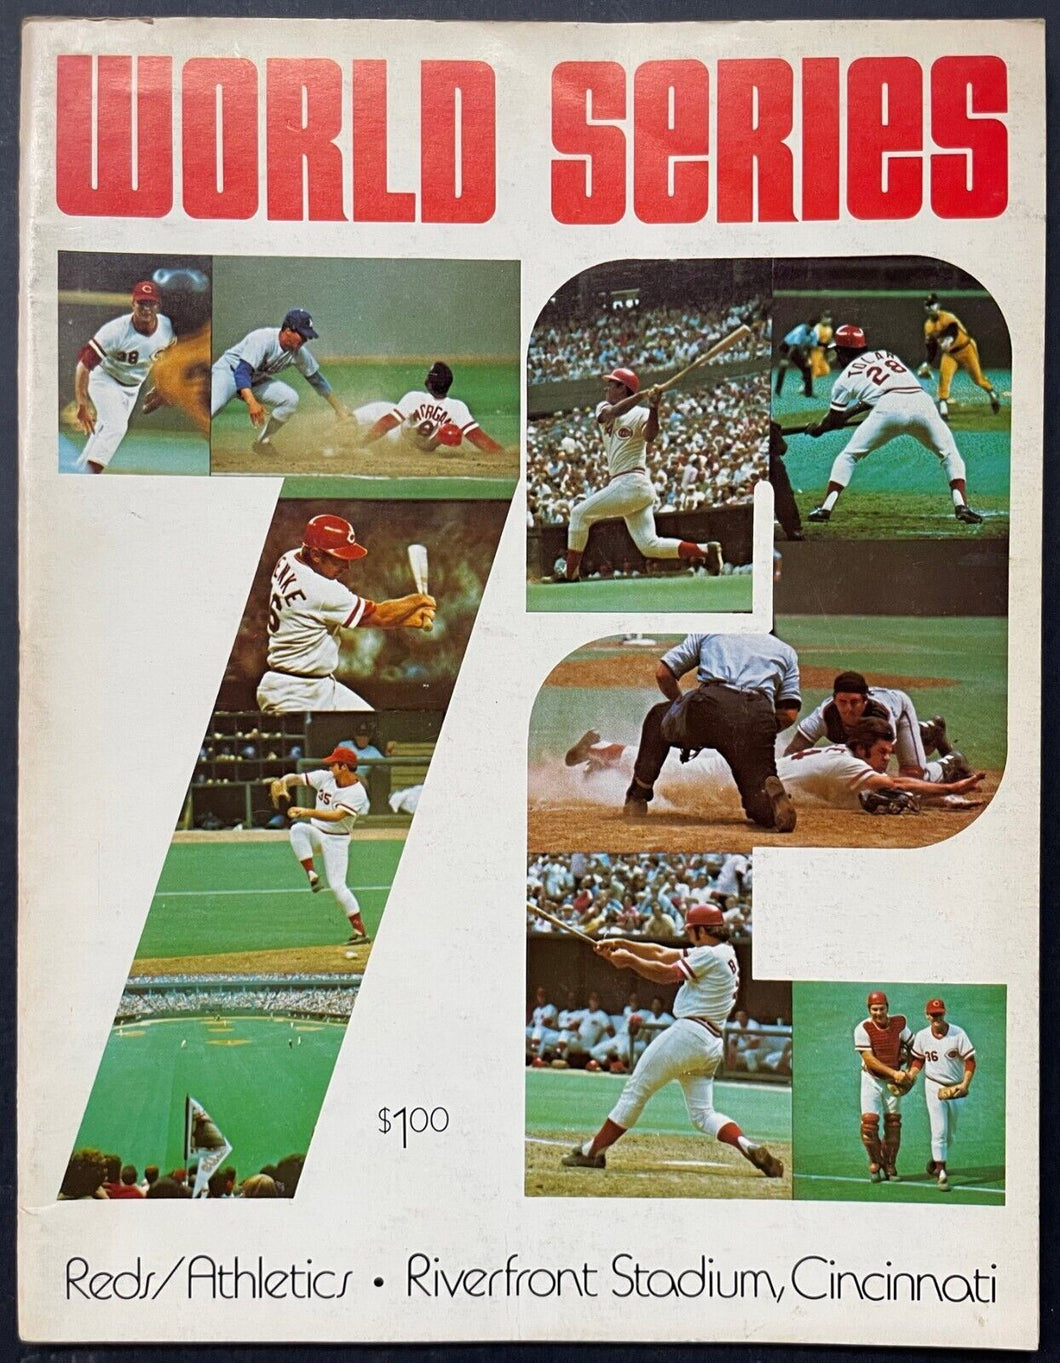 1972 Cincinnati Reds vs. Oakland Athletics World Series Program MLB Baseball VTG